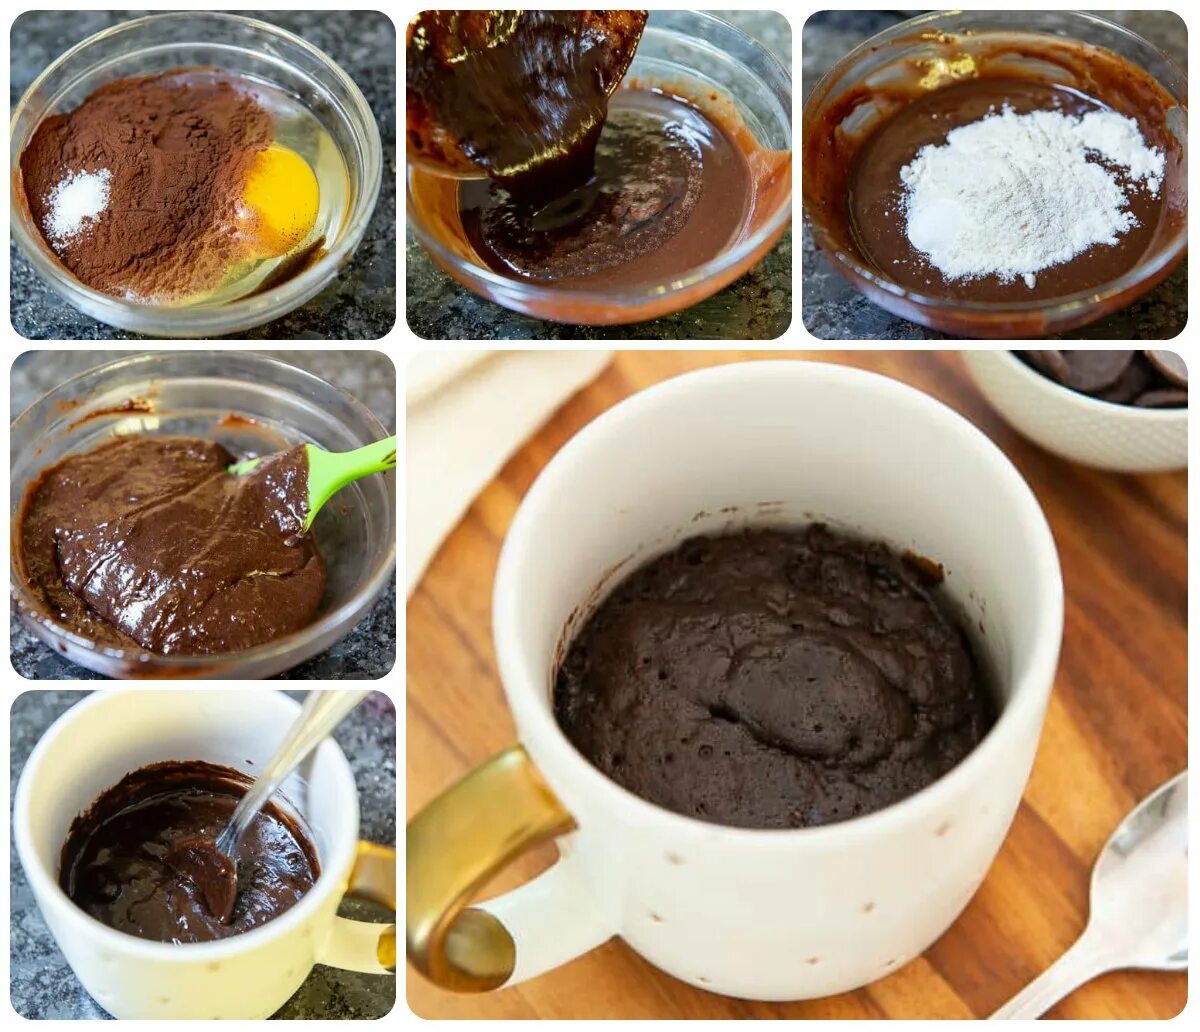 Шоколадный кекс за 5 минут. Шоколадный кекс в кружке в микроволновке за 5 минут. Кекс в микроволновке за 5 минут с какао. Кекс из какао в микроволновке за 5 минут в кружке. Кекс в микроволновке за 5 минут рецепт в кружке с какао.